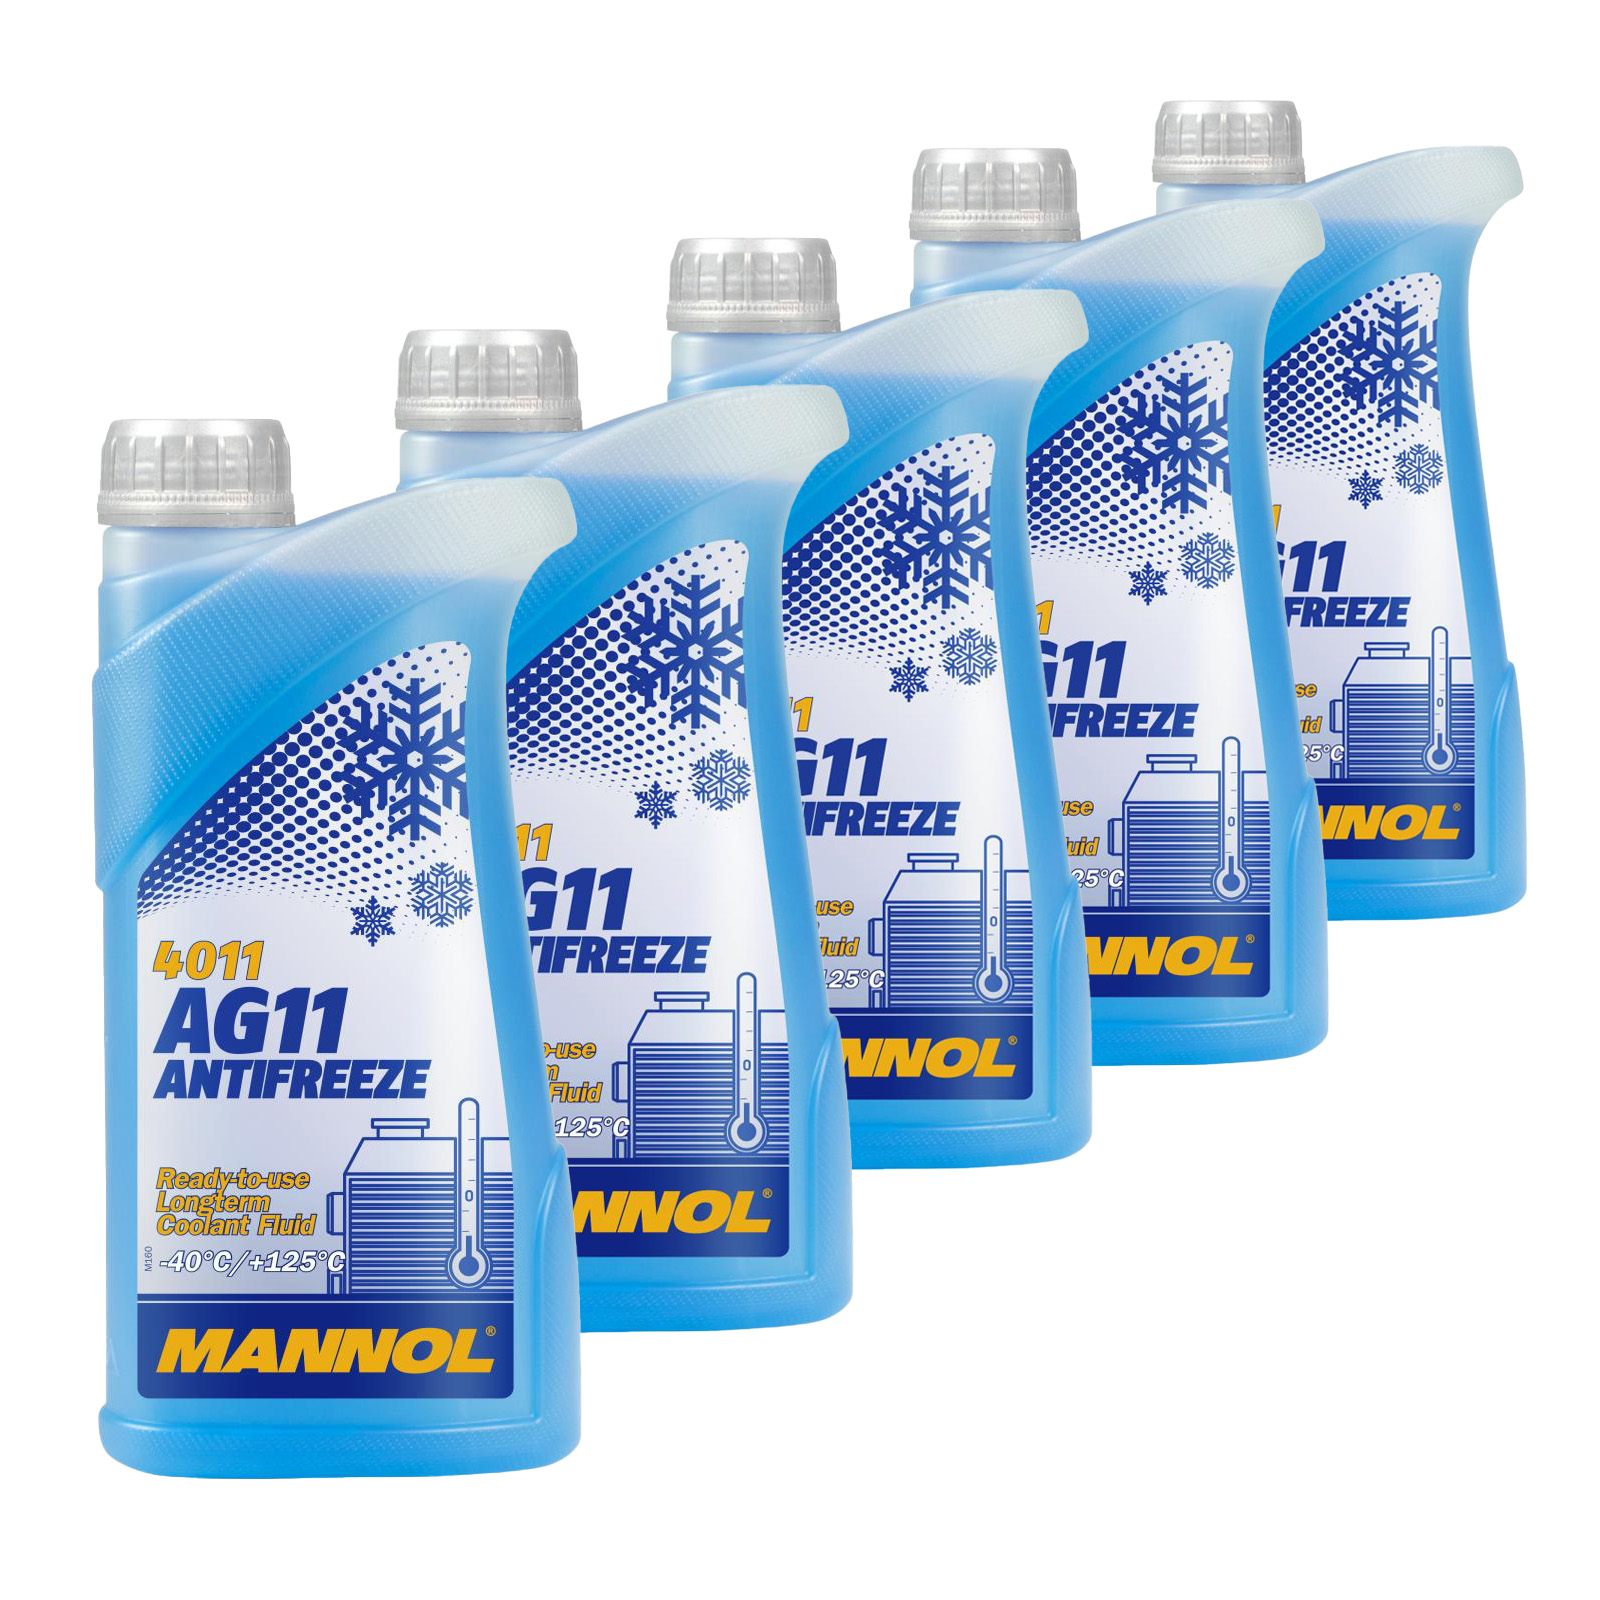 5 Liter (5x1) MANNOL Antifreeze AG11 Fertiggemisch blau -40°C G11 Kühlerfrostschutz